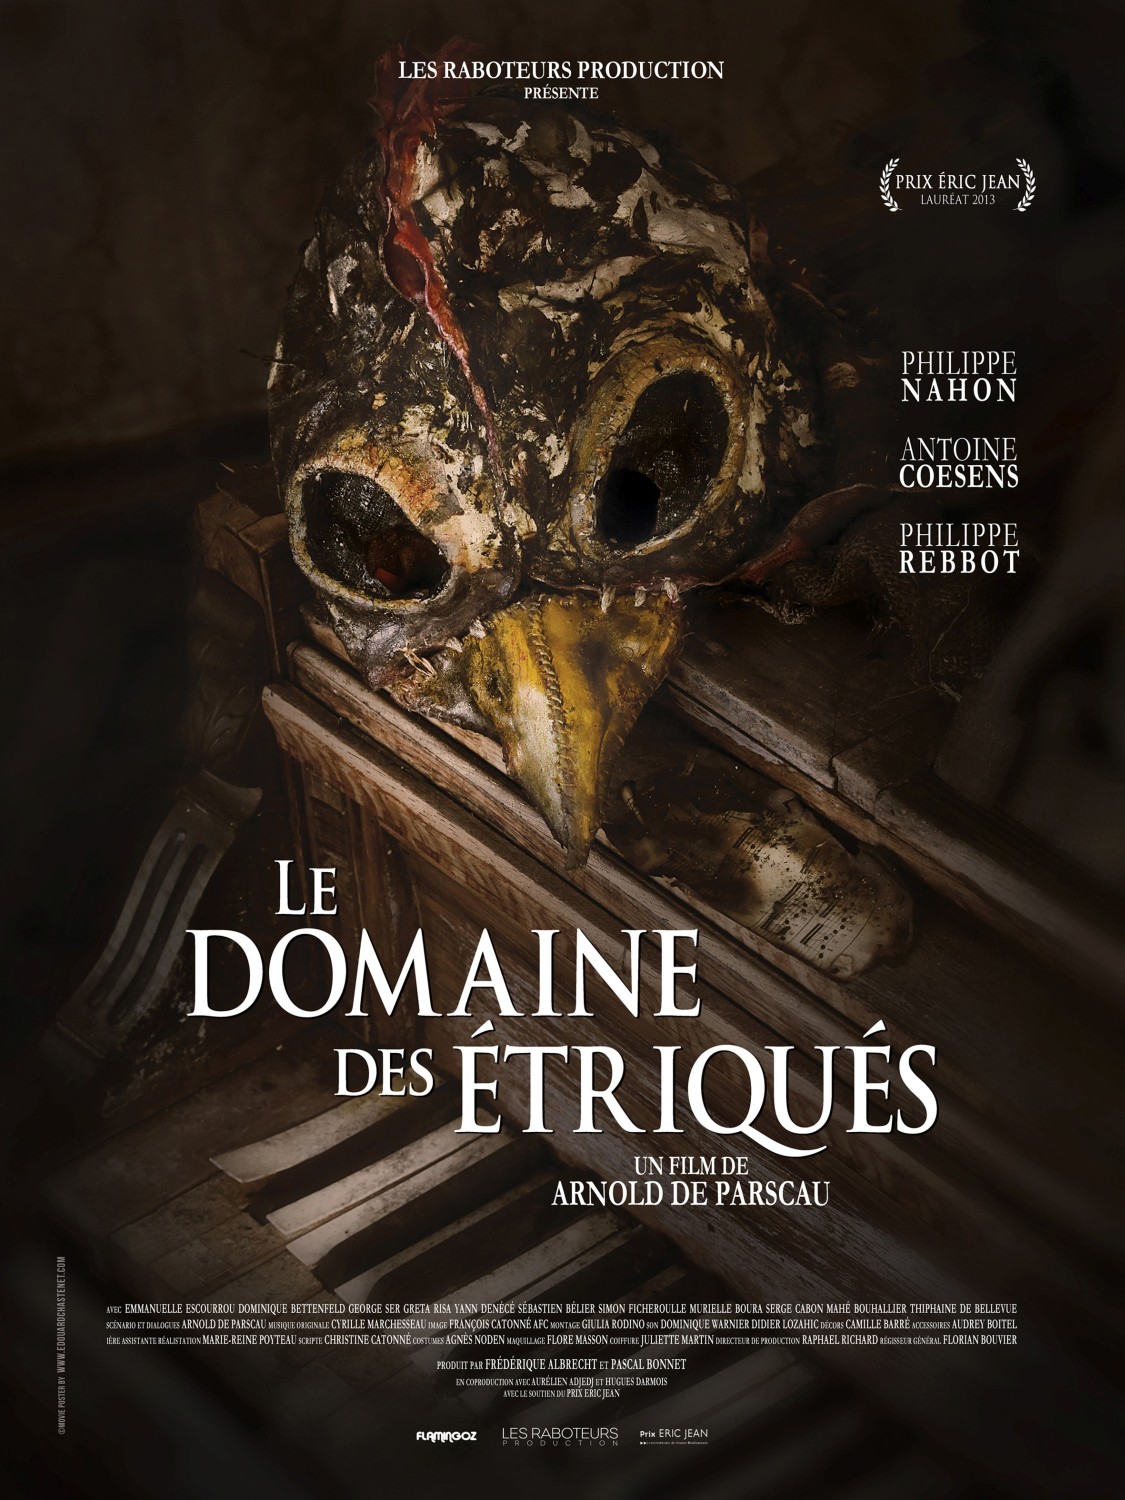 Extra Large Movie Poster Image for Le domaine des triqus